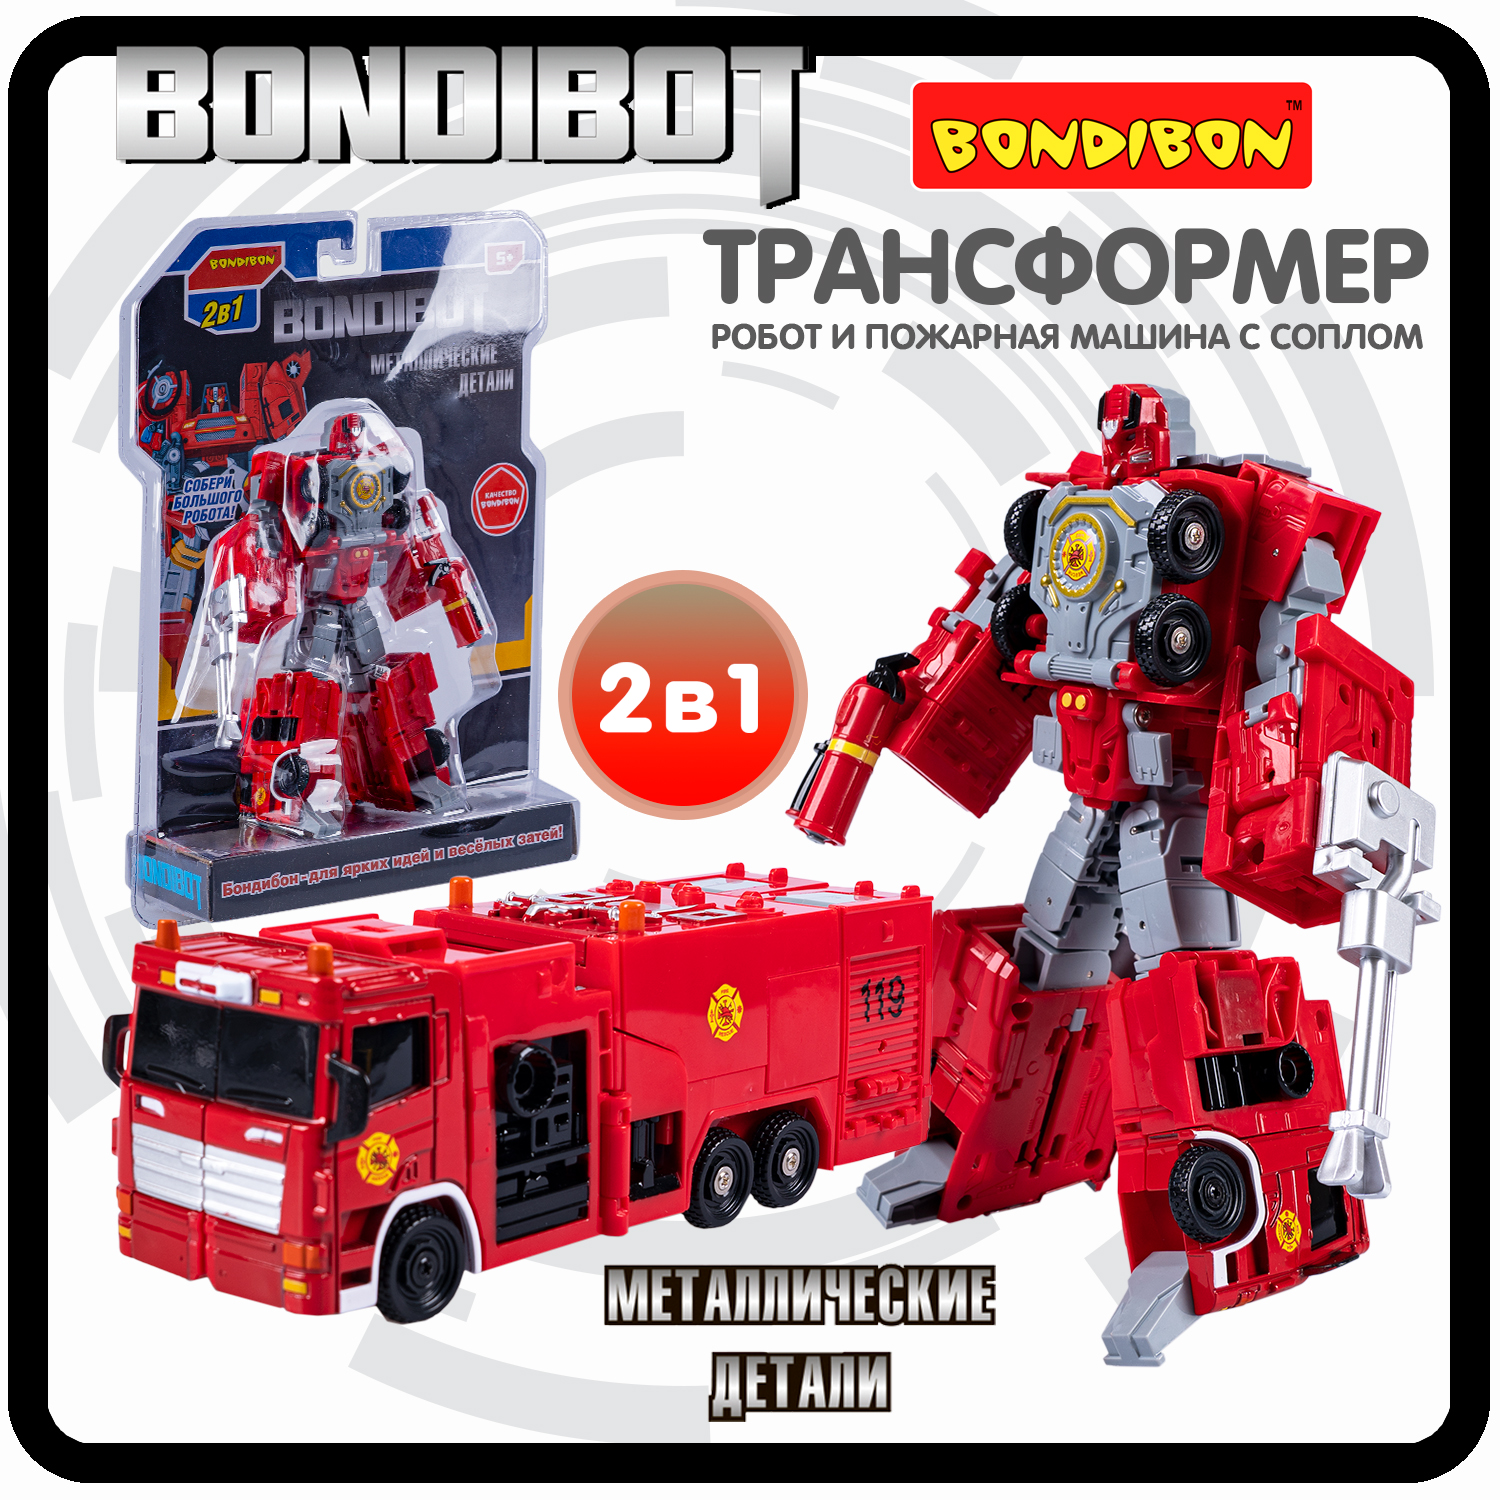 Робот трансформер 2в1 Bondibon BONDIBOT пожарная машина с соплом bondibon трансформер bondibot 2 в 1 робот полицейская машина